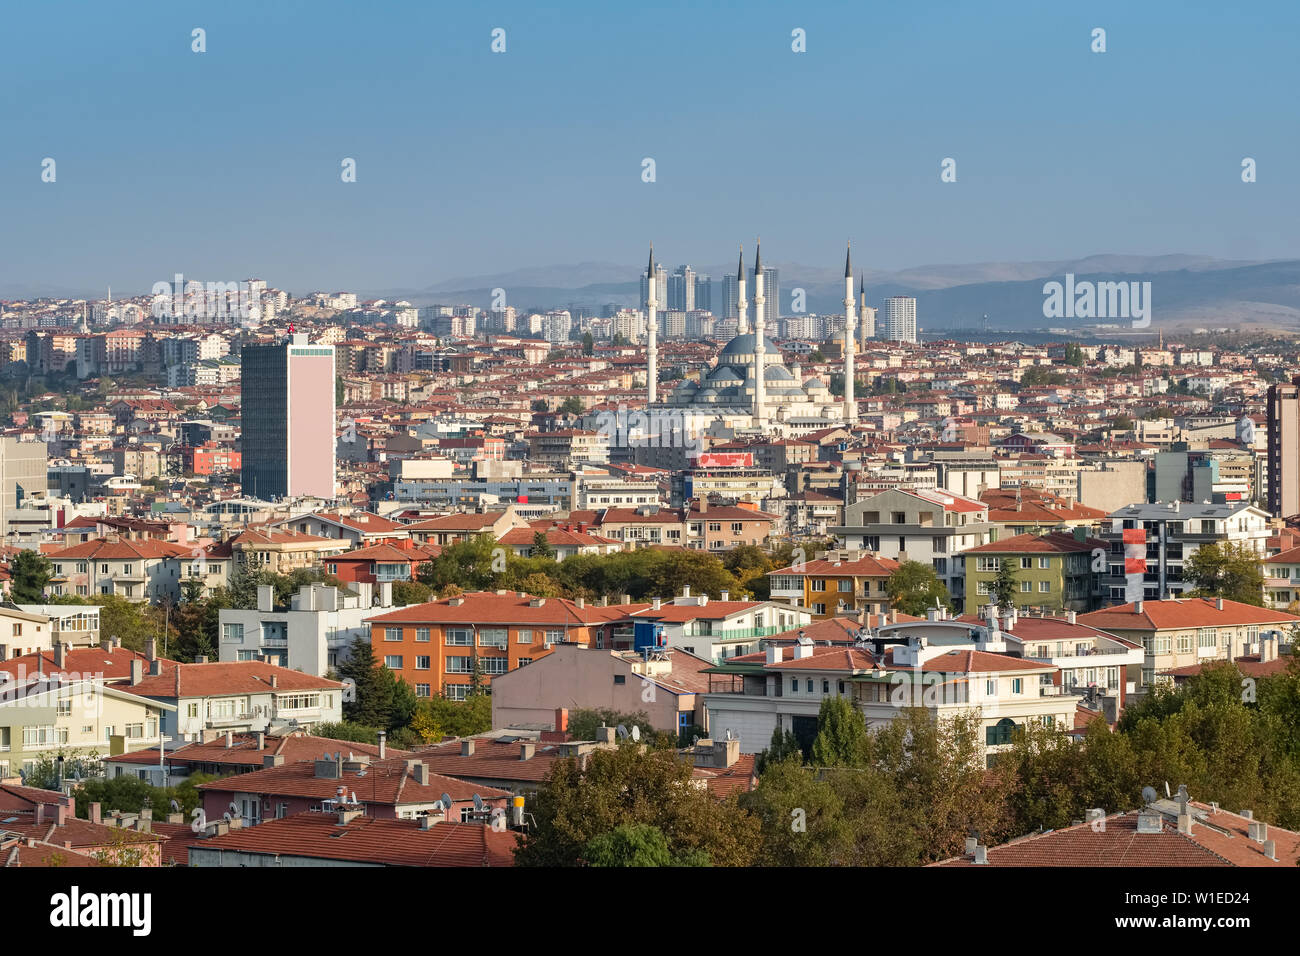 Ankara cityscape in Turkey Stock Photo